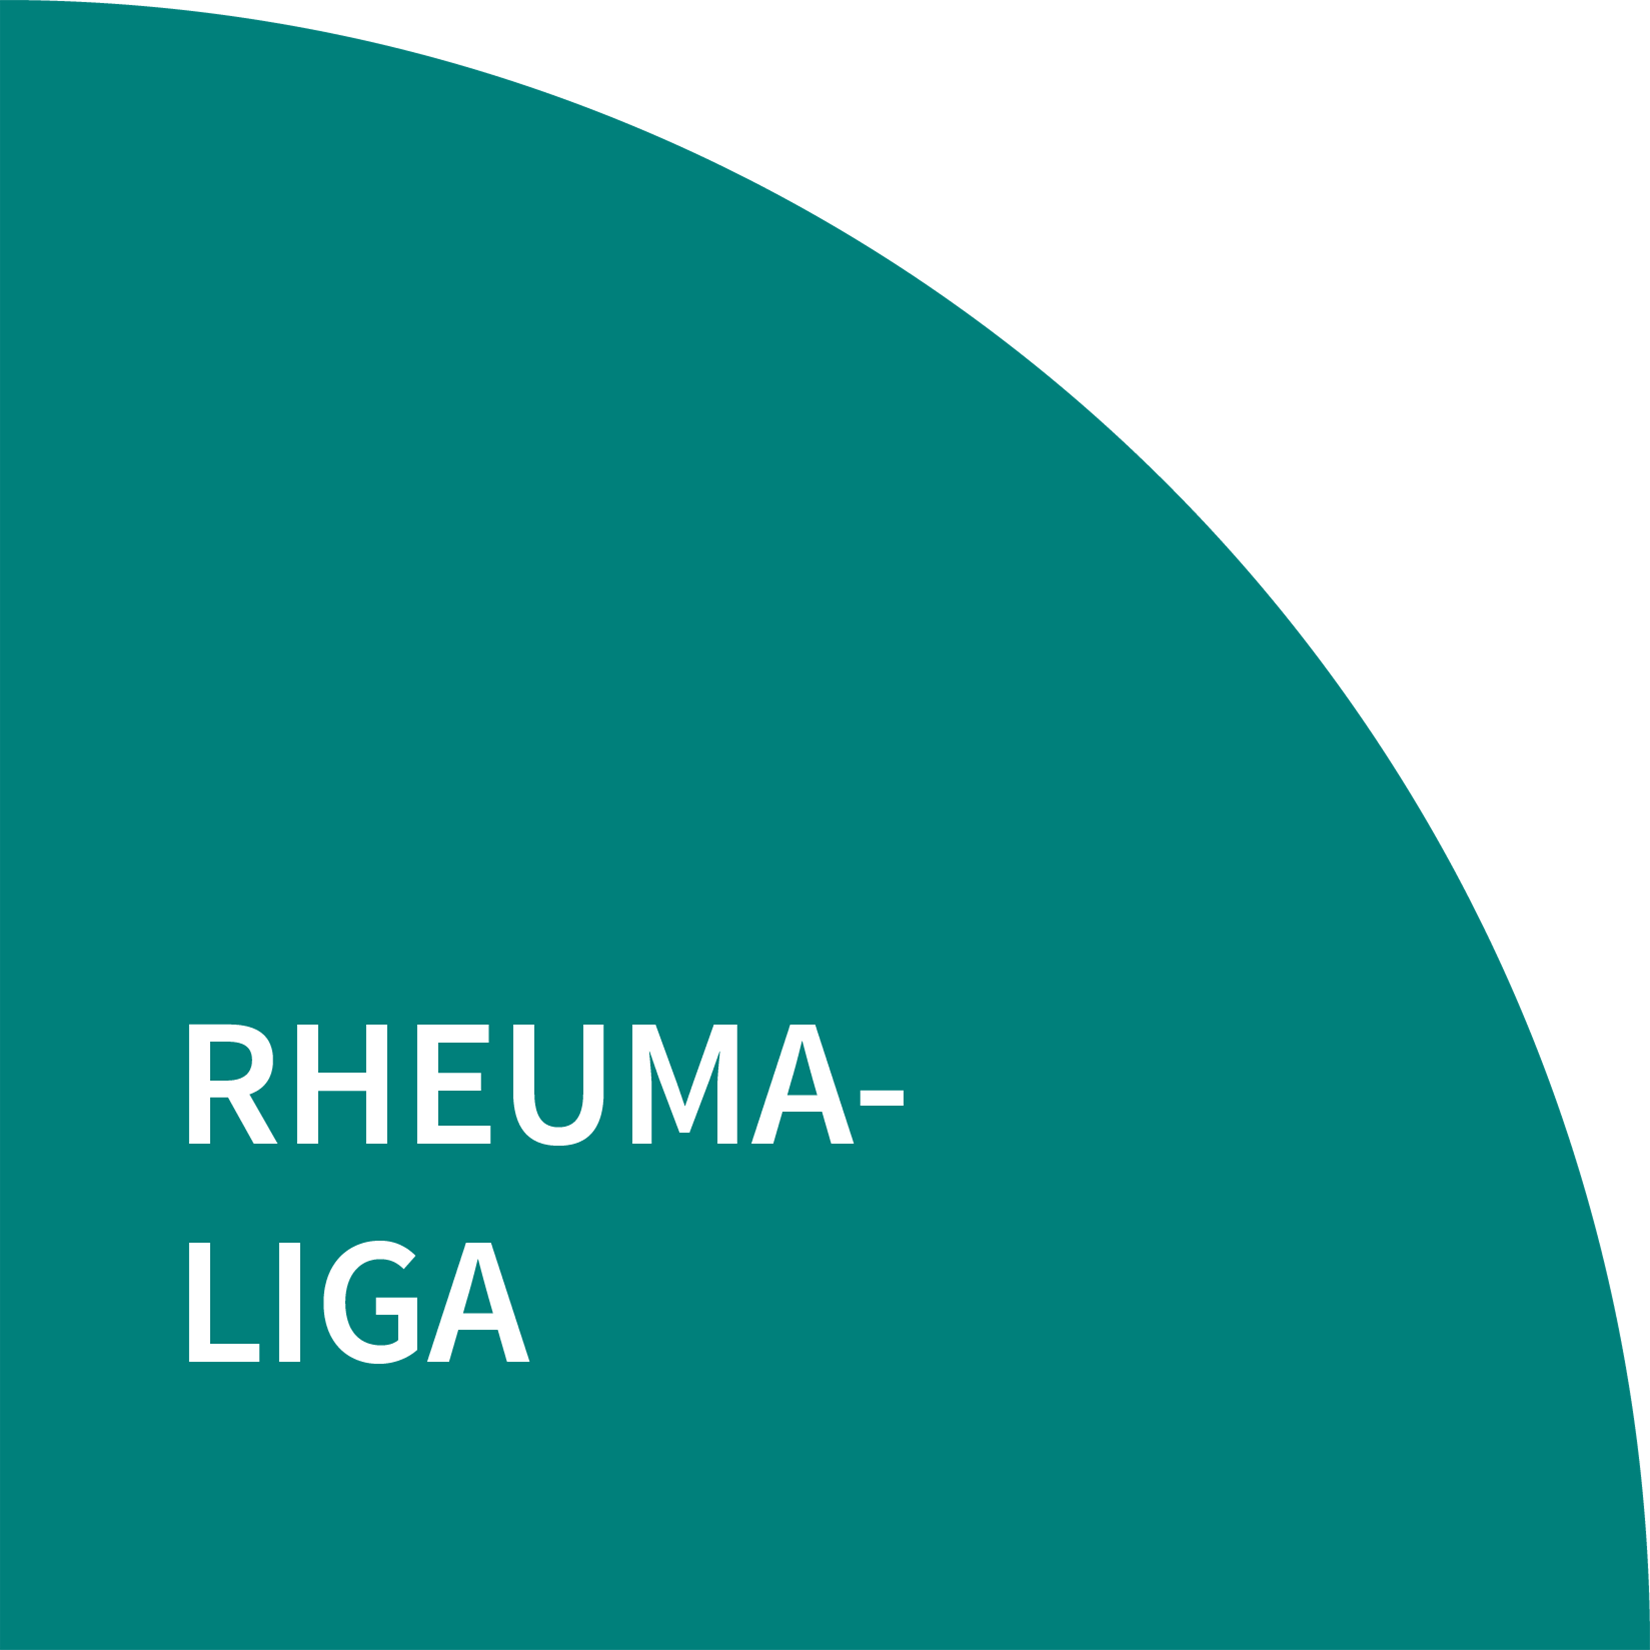 Rheuma-Liga